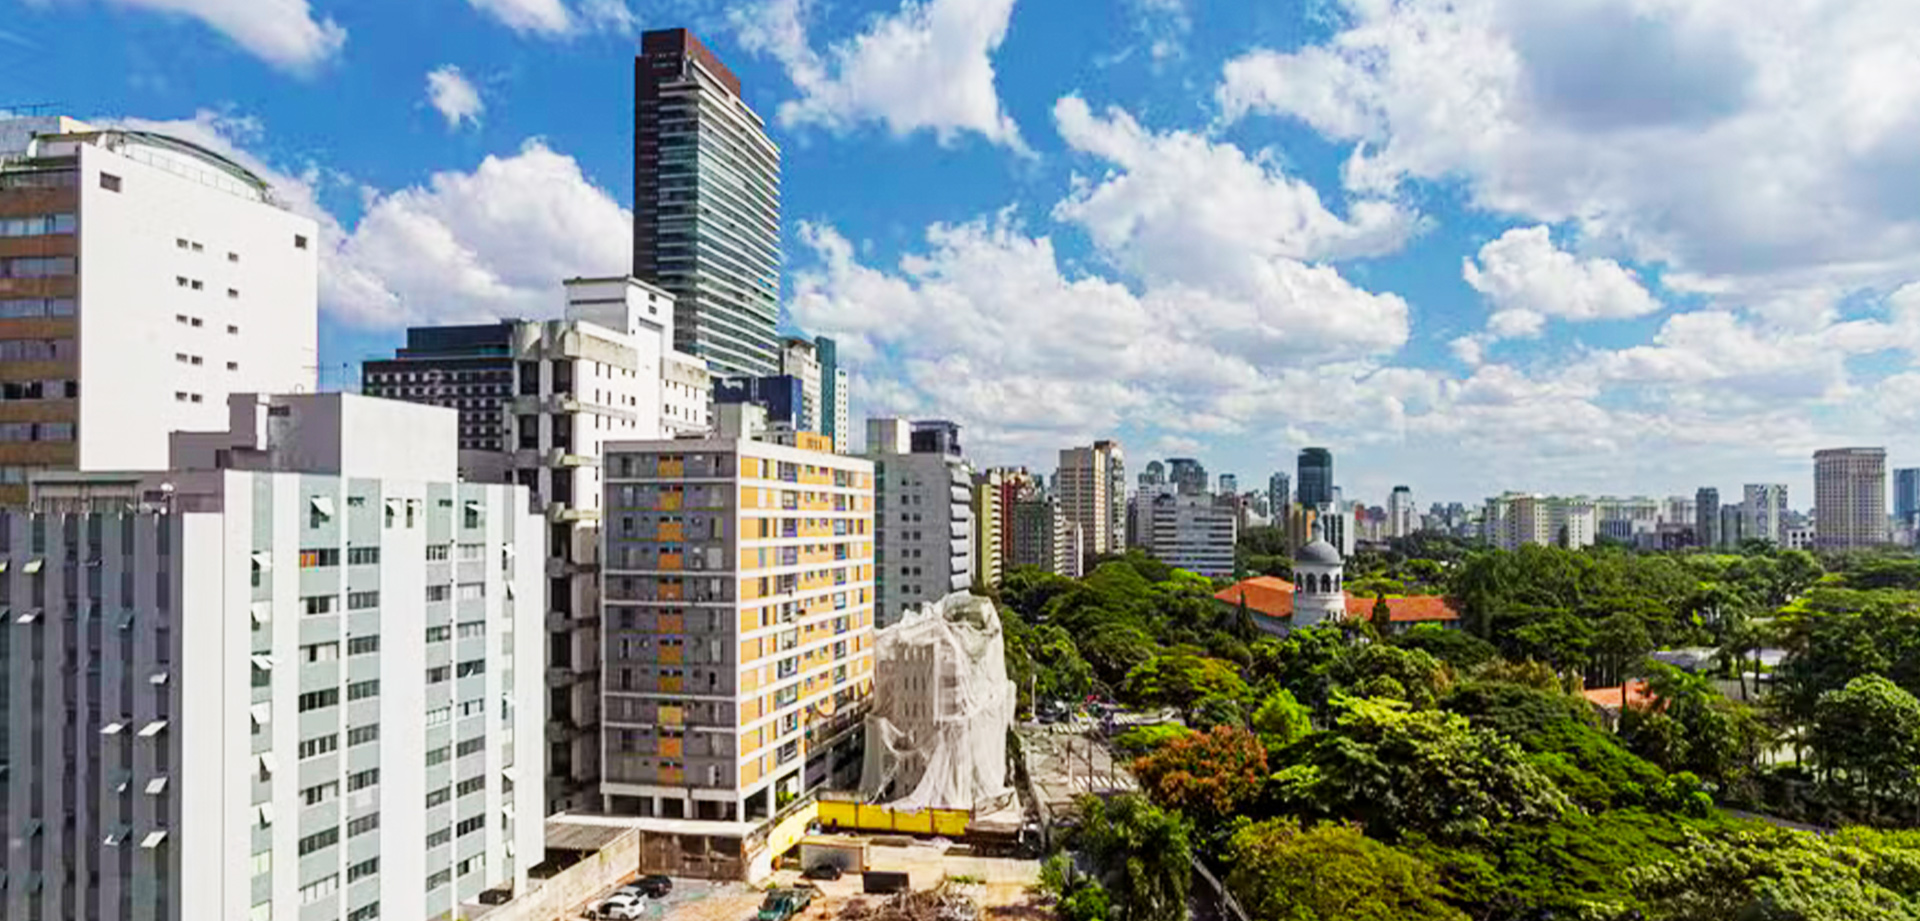 A Câmara de São Paulo retoma o debate sobre a Lei de Zoneamento para corrigir erros no mapa legal, sem alterar a altura dos edifícios nos miolos de bairro. Saiba mais sobre as mudanças previstas.